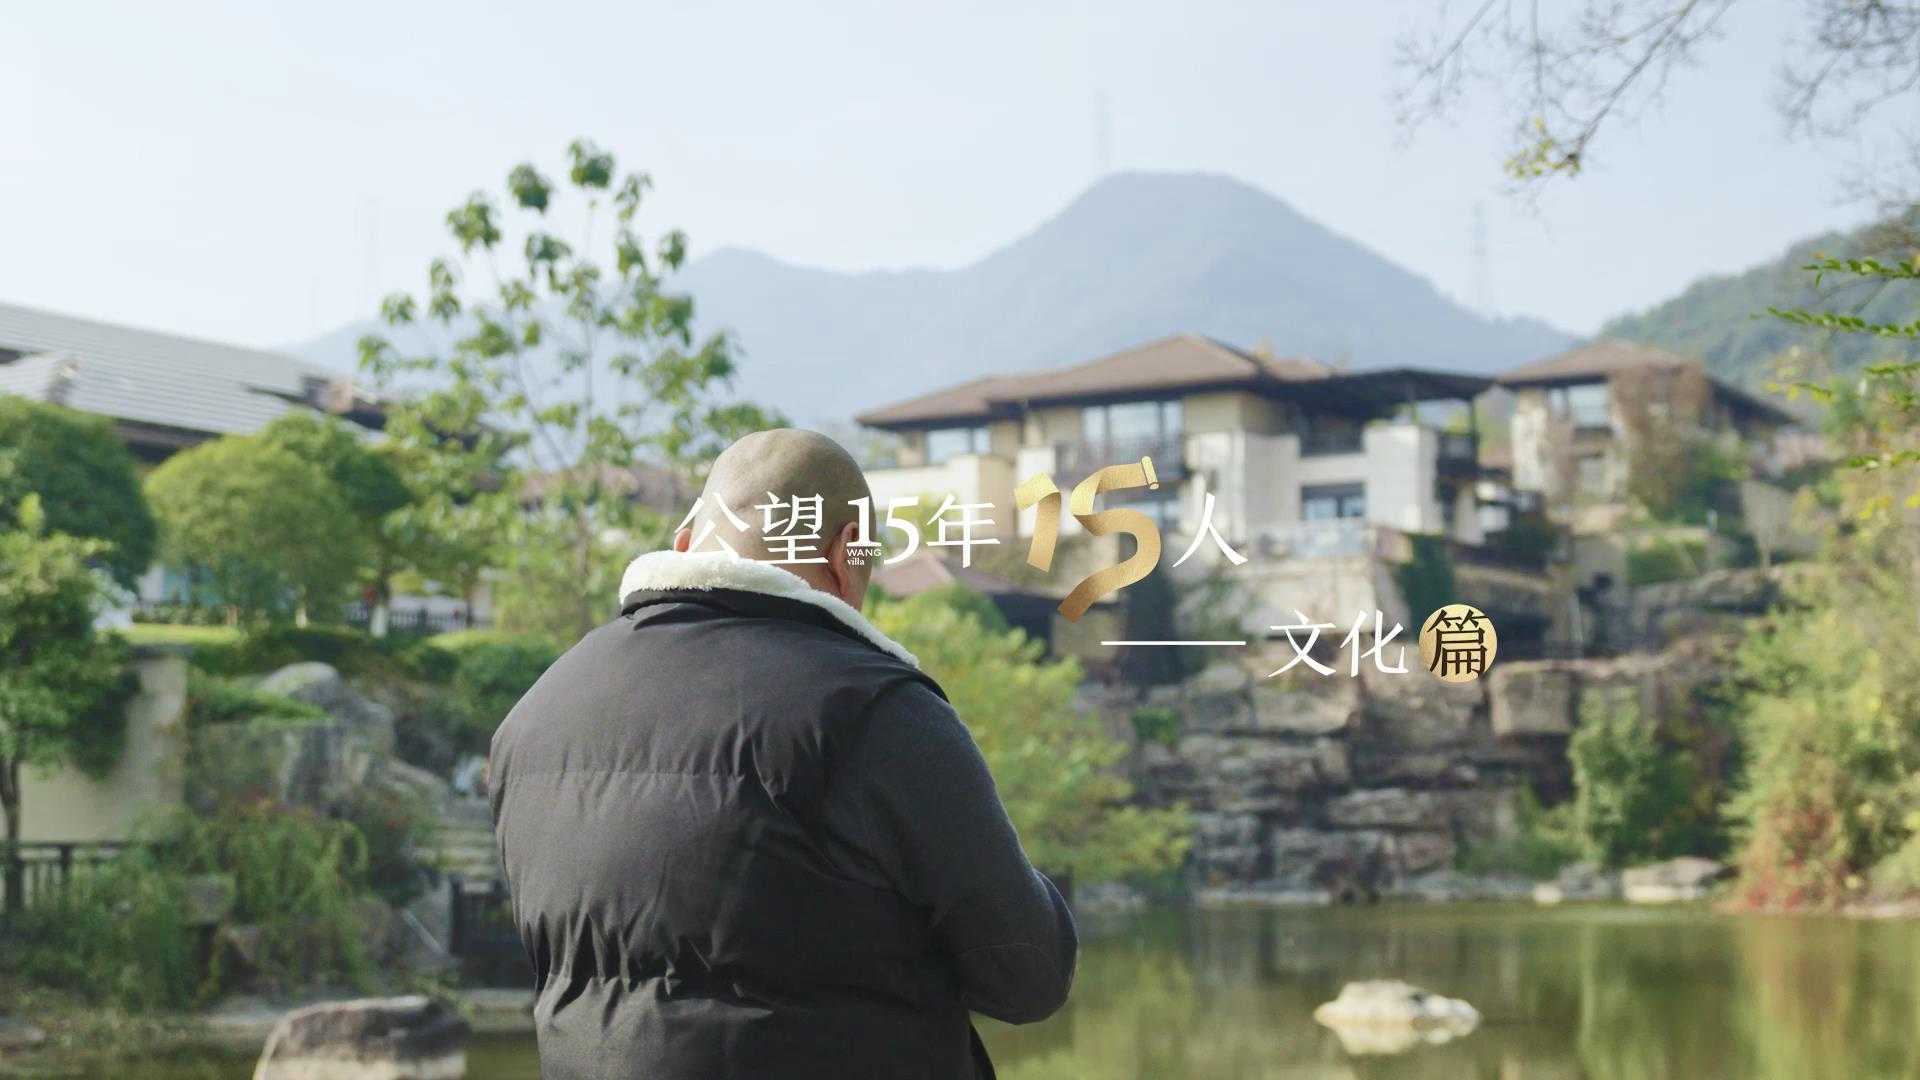 用镜头记录山水园林的四季 | OUOFILMS X 杭州万科